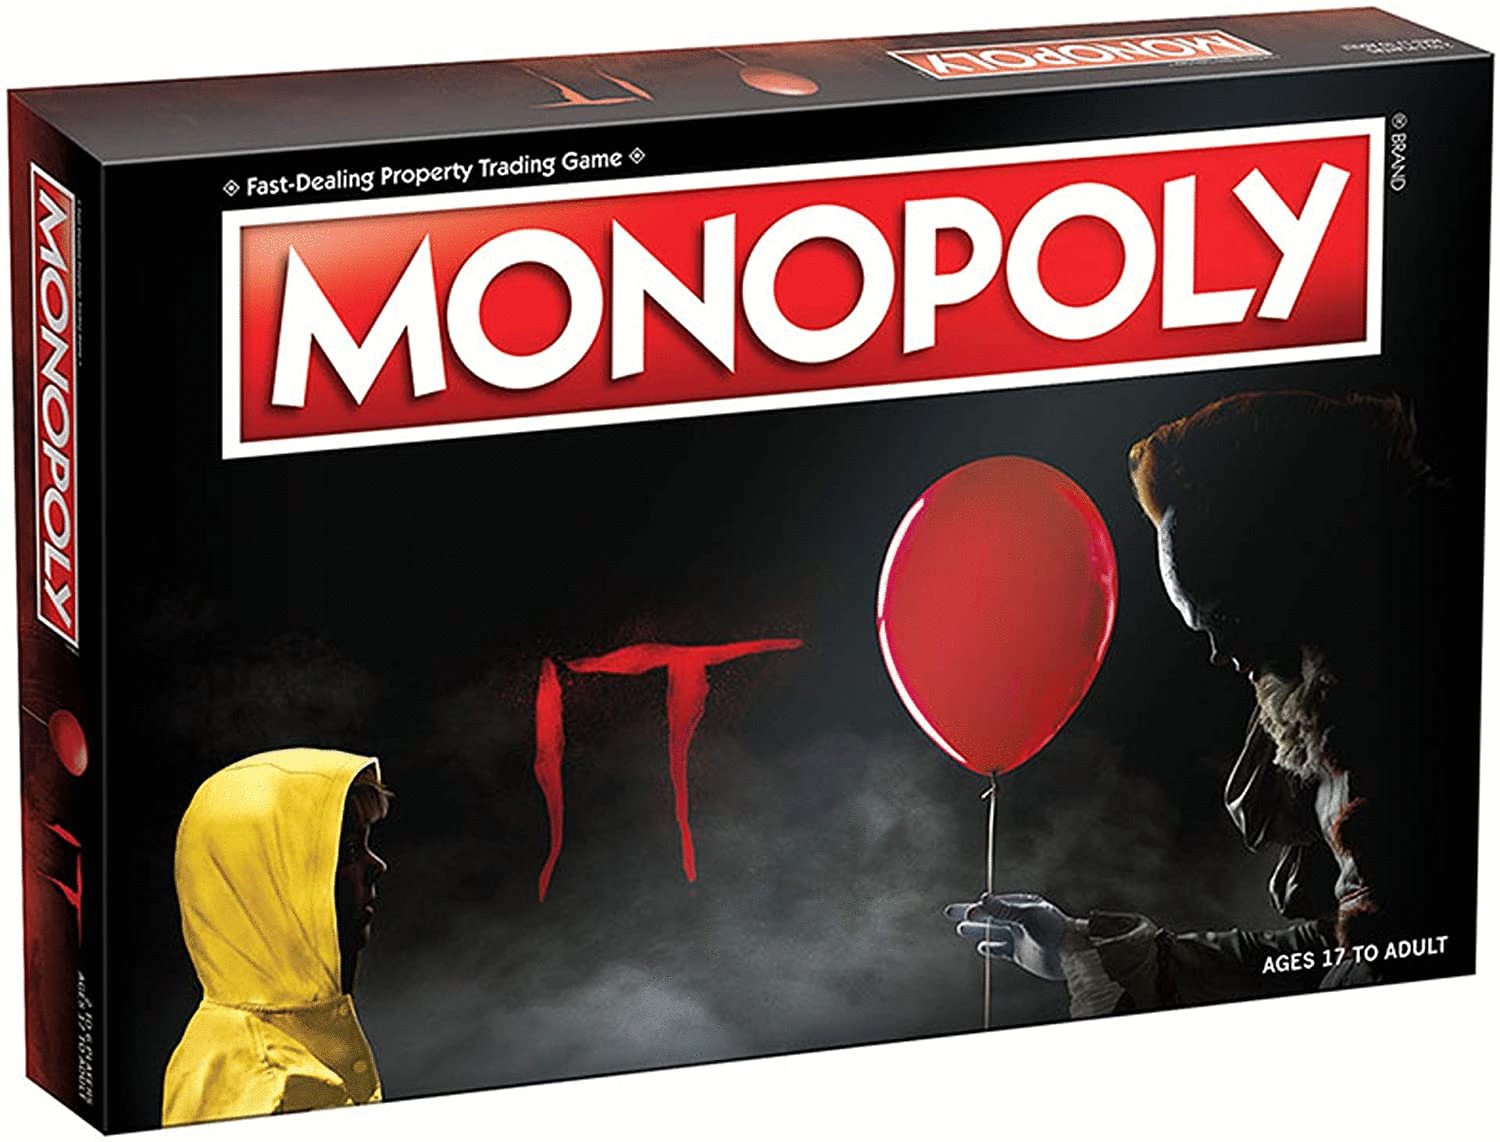 Monopoly Juego de mesa